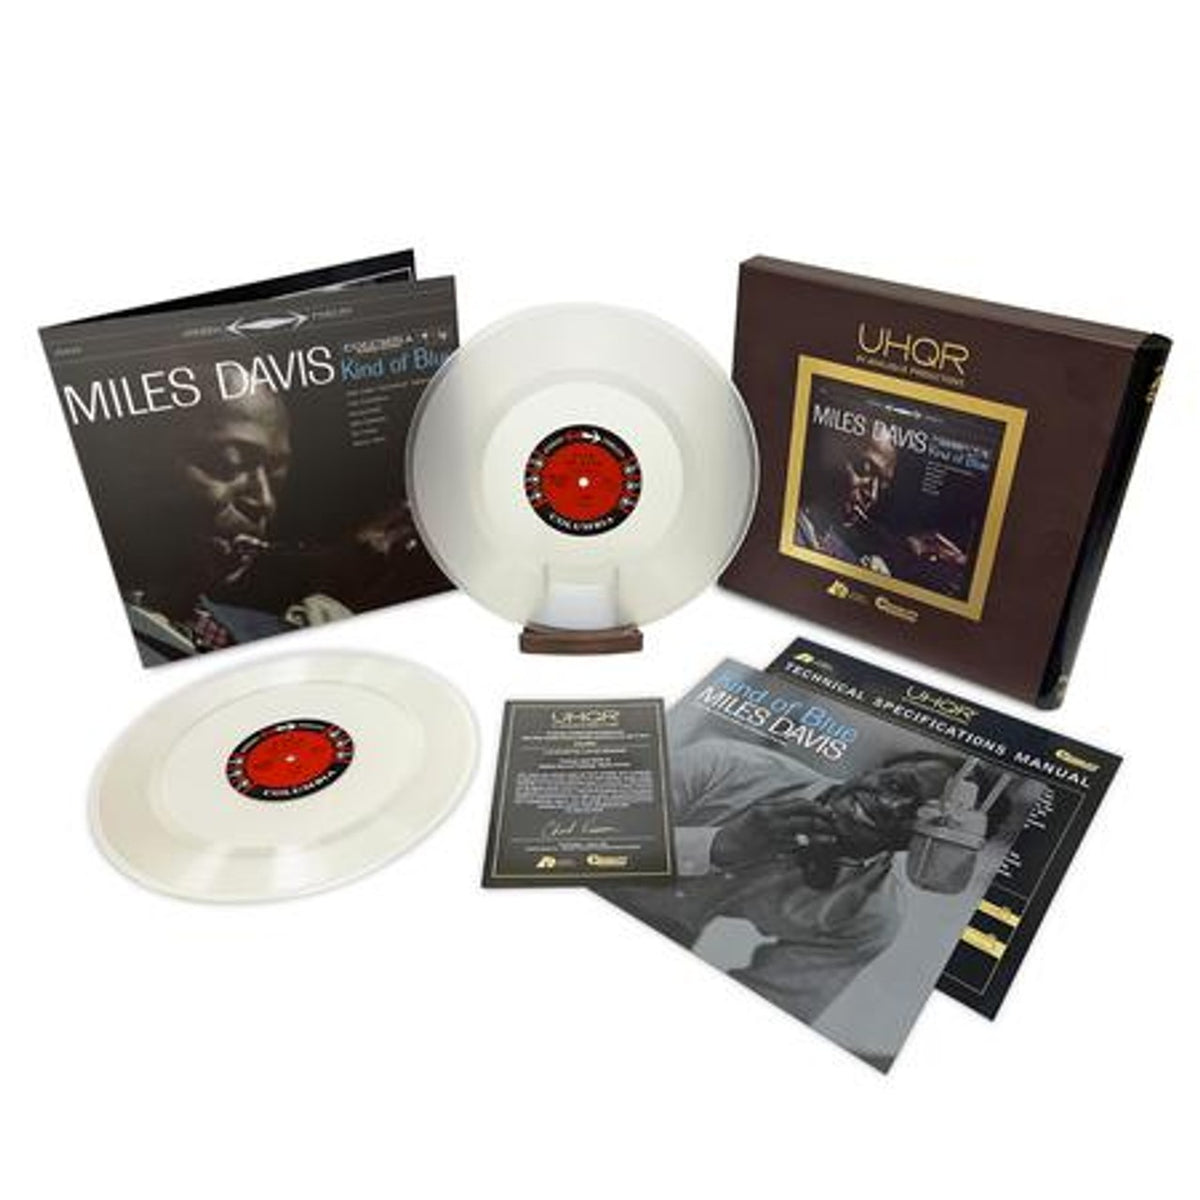 Miles Davis - Kind Of Blue 2LP (UHQR Box Set, 45rpm, 200g Clarity Vinyl, Analogue Productions)